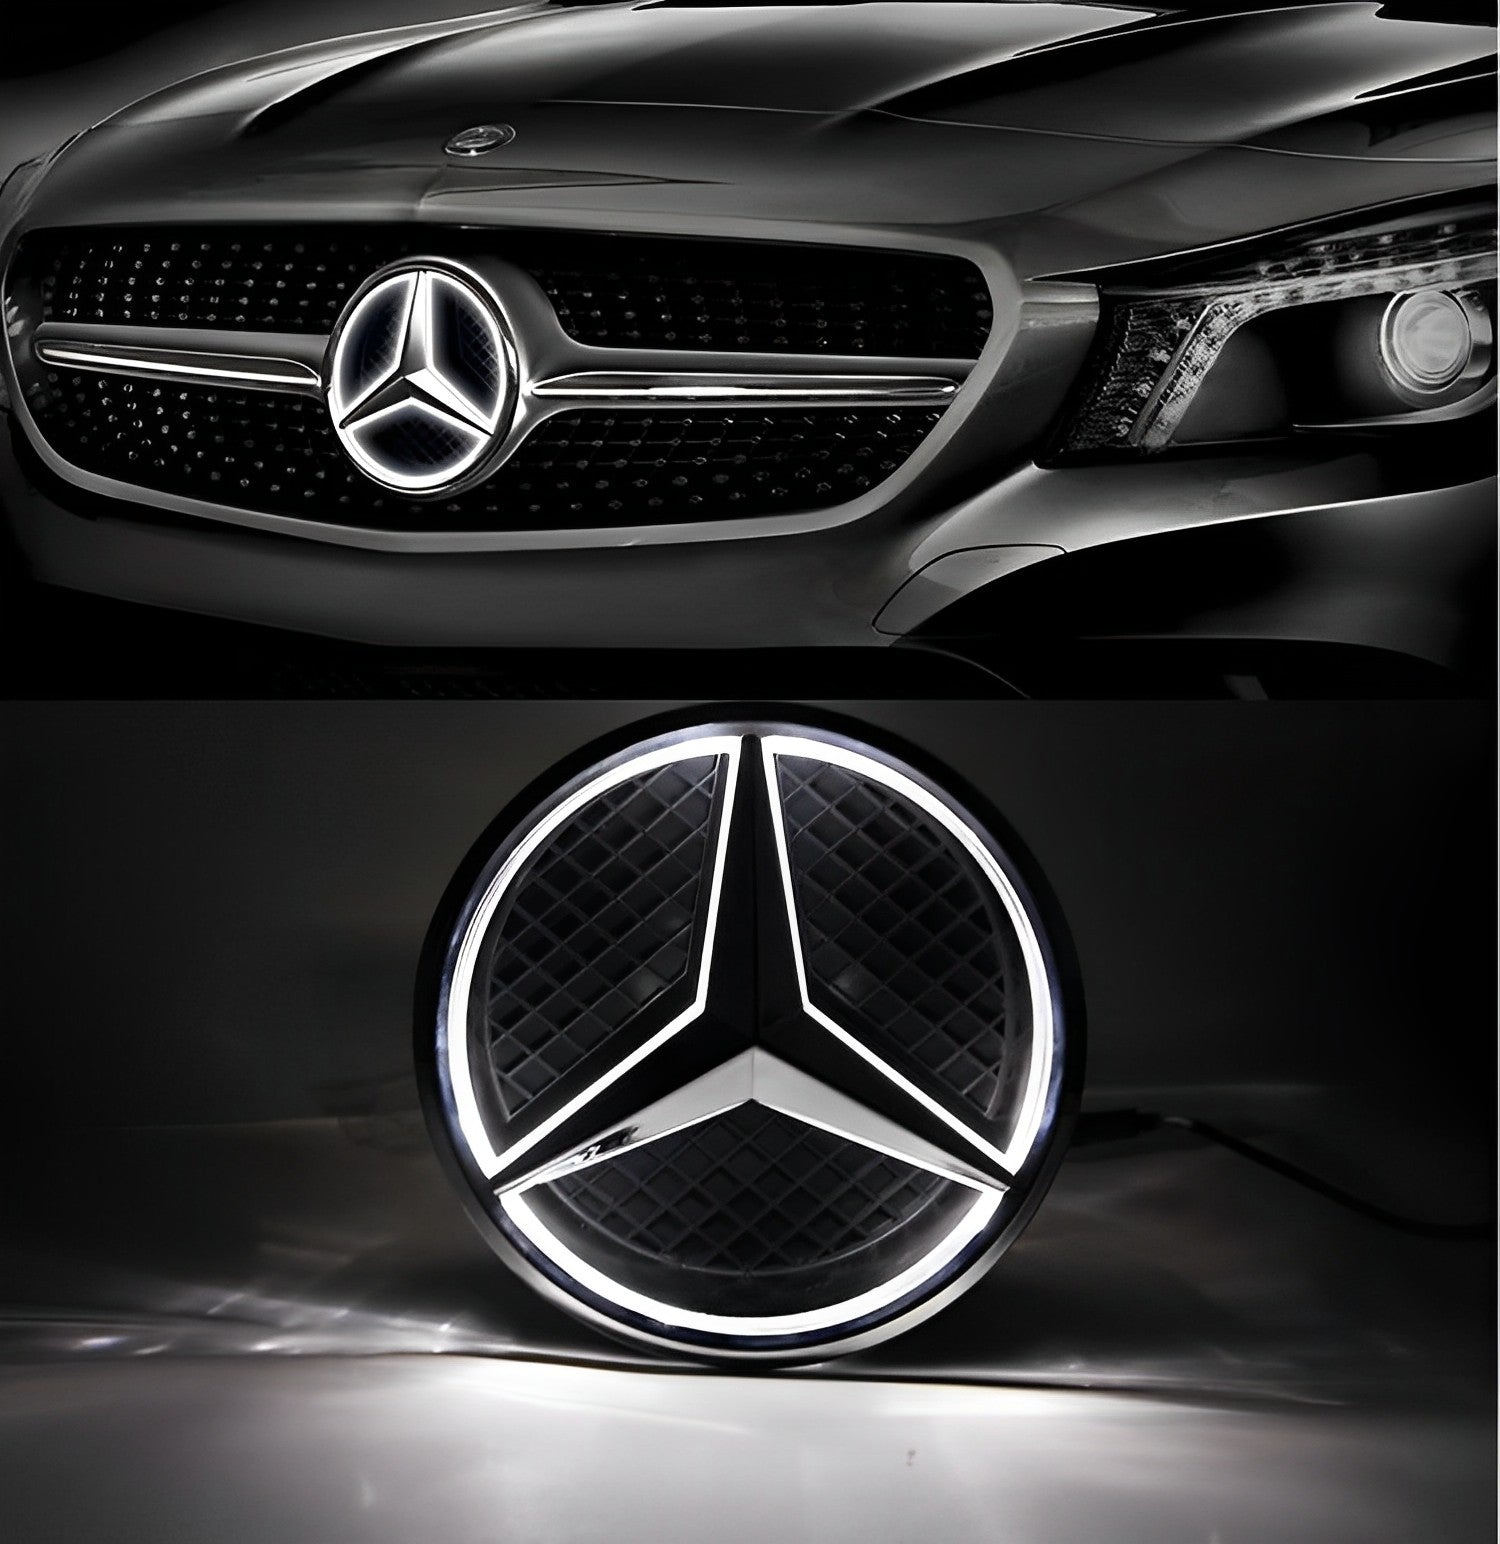 https://benz-yourself.com/cdn/shop/products/Illuminated-Emblem-Logo-Benz-Yourself-com-456_cd972aed-6705-4bb8-a30c-dee63ea4763c.jpg?v=1672378032